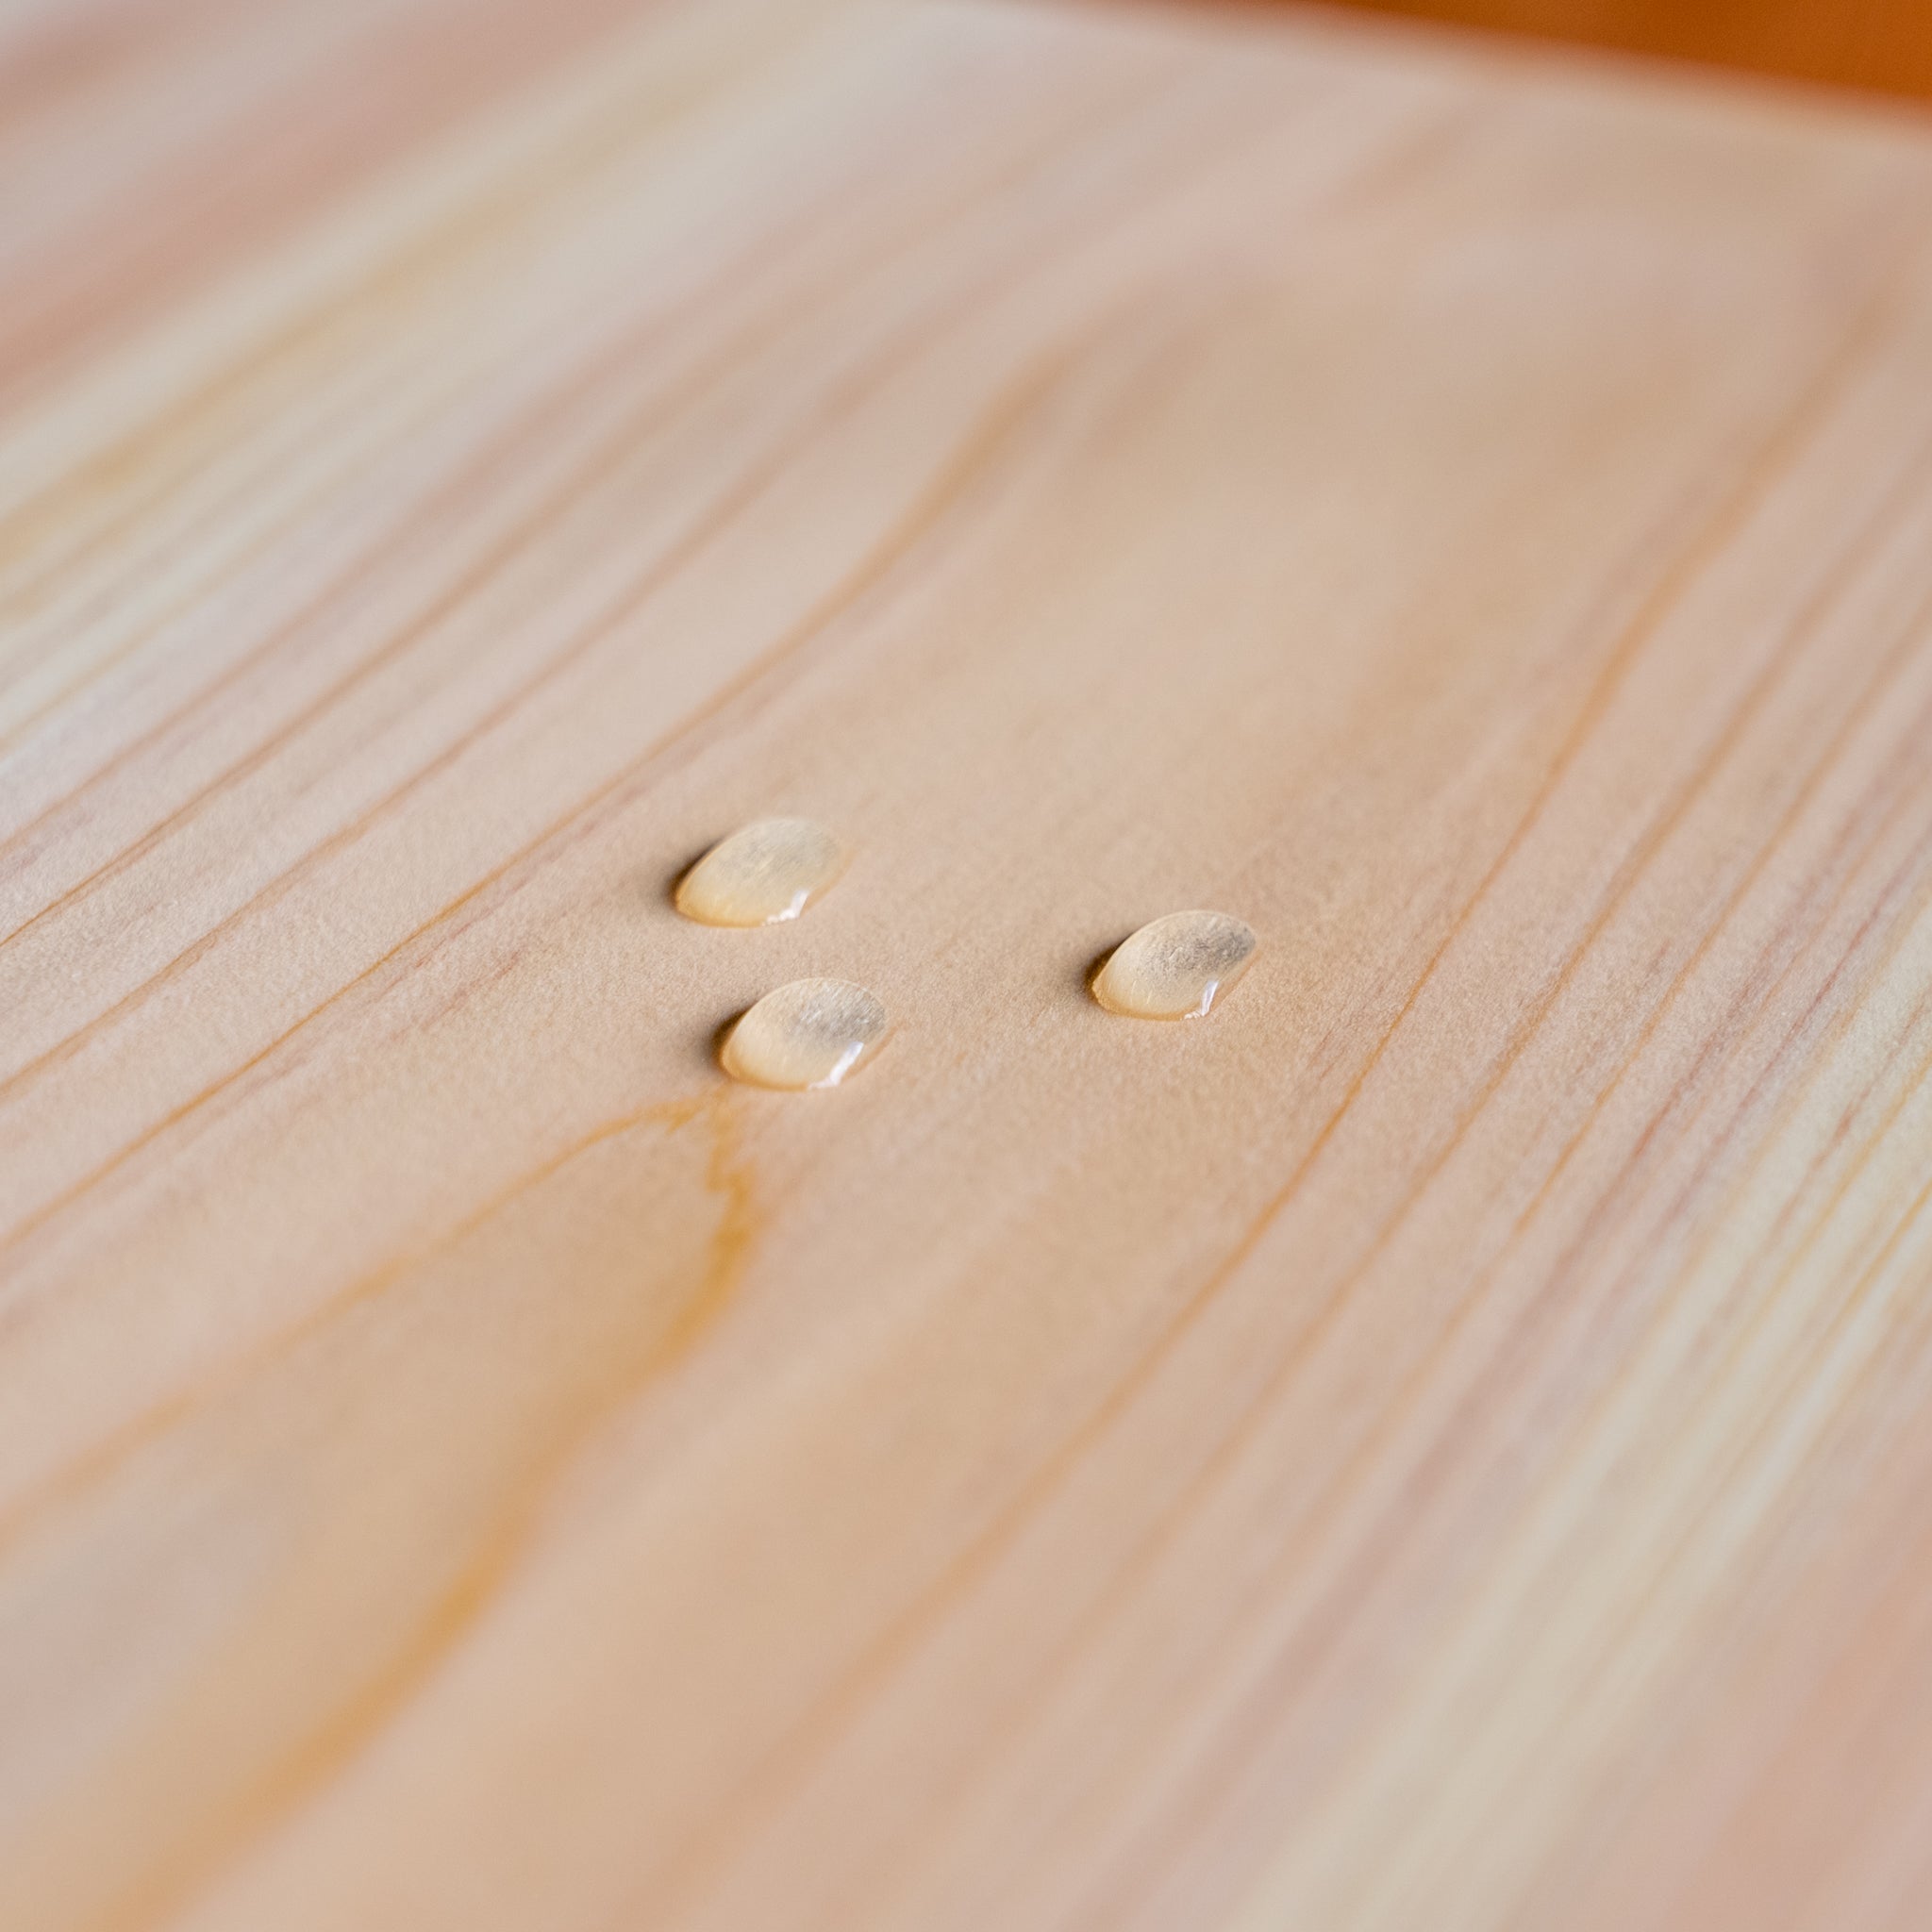 【一点物】檜のまな板 120×30×5.2cm